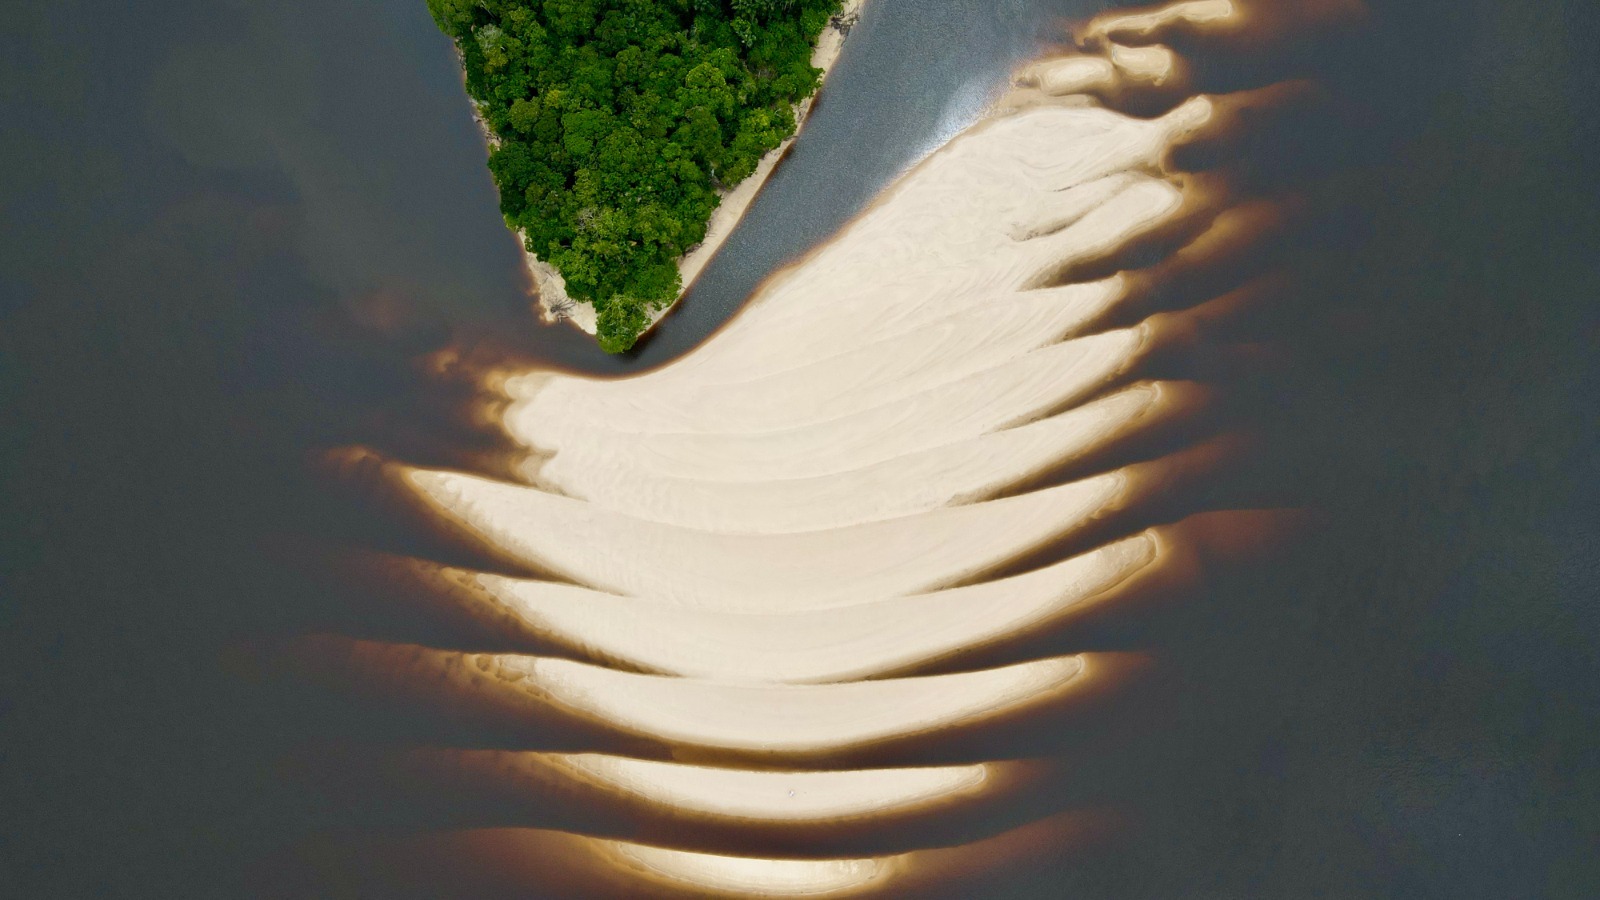 Verão Amazônico: conheça praias inexploradas e paradisíacas no Amazonas